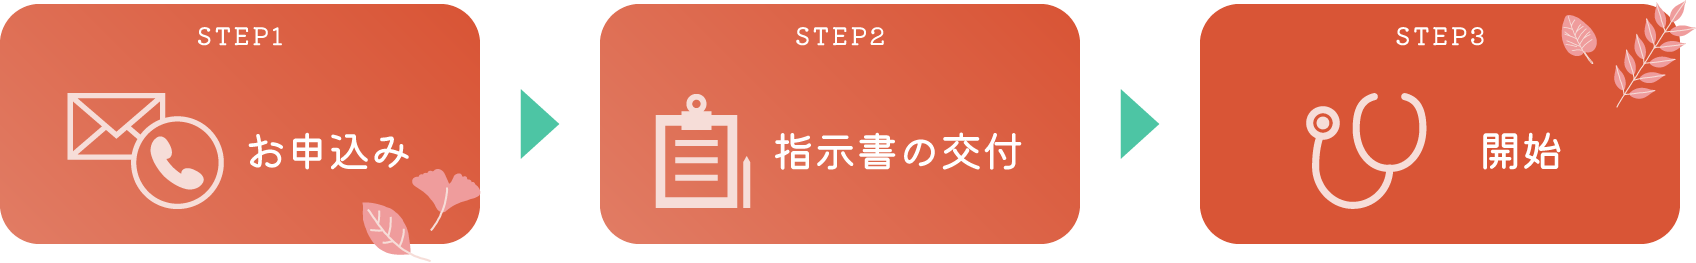 Step1お申込み、Step2指示書の交付、Step3診療開始